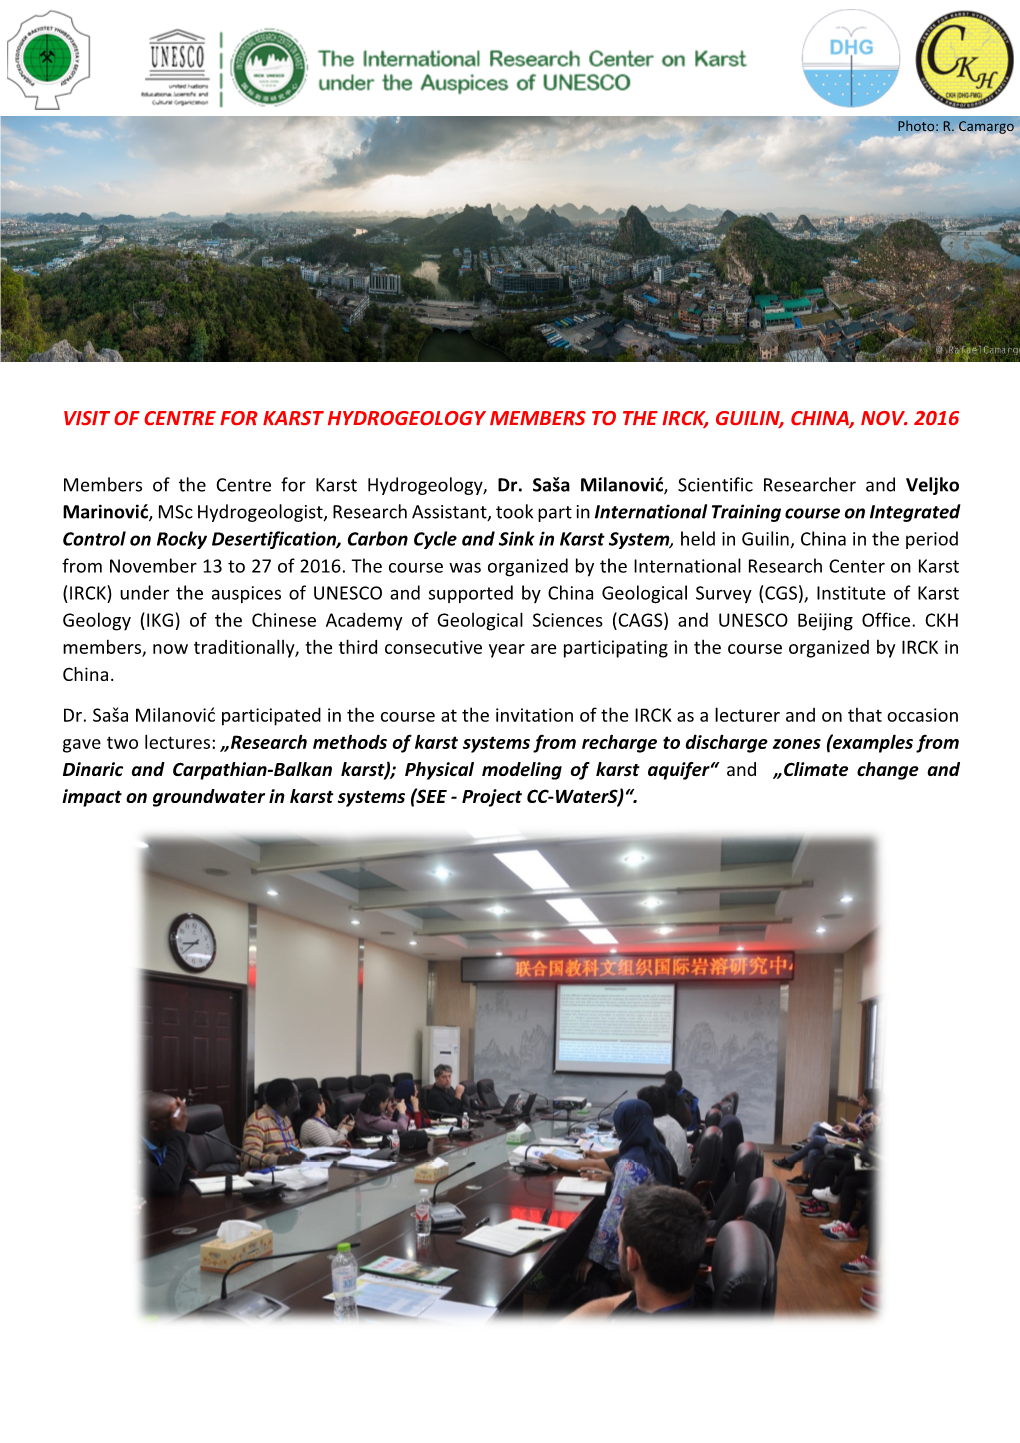 Report on Visit of CKH Members to IRCK, Guilin, China